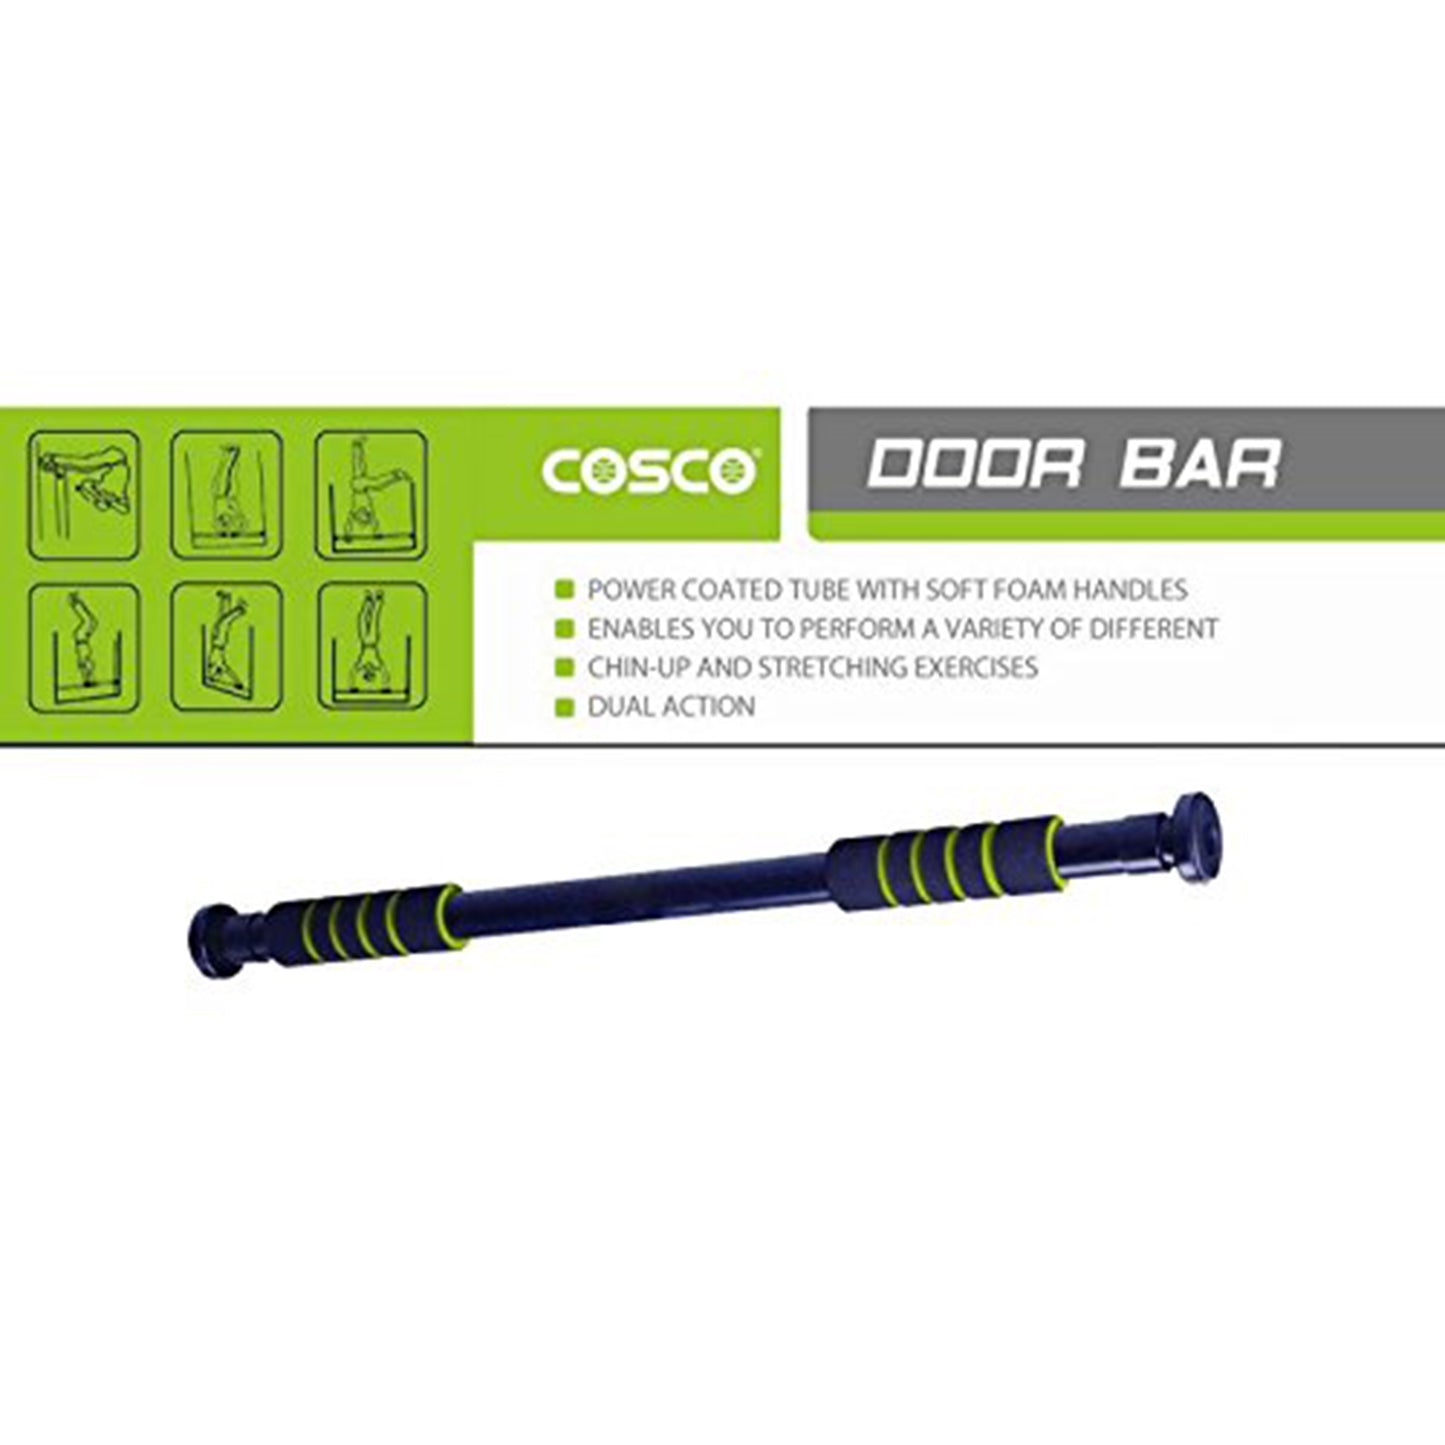 Cosco Adjustable Door Bar for Pull-Ups, Chin Ups - 63-96cm - Best Price online Prokicksports.com